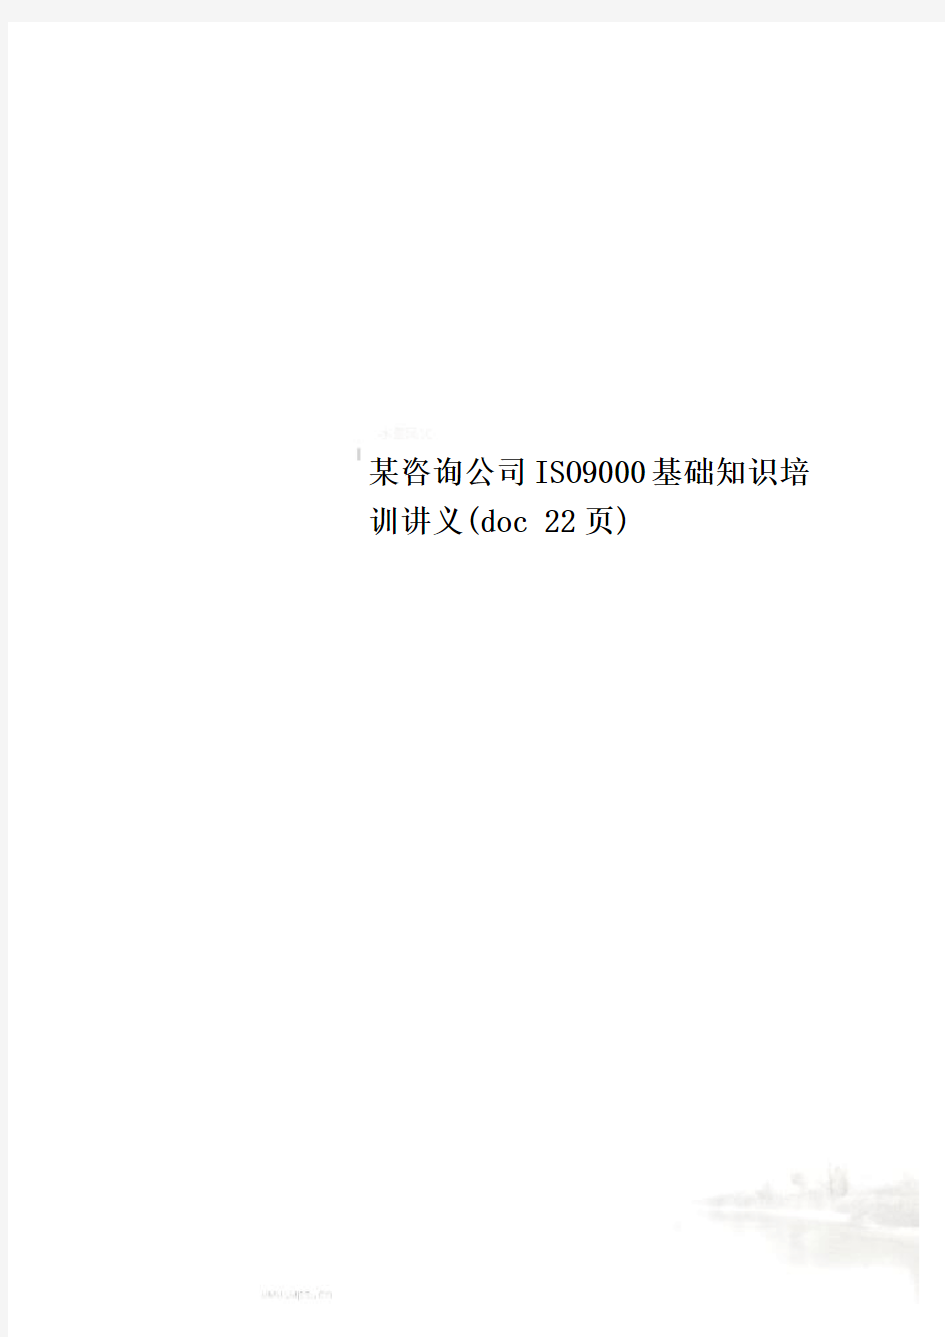 某咨询公司ISO9000基础知识培训讲义(doc 22页)